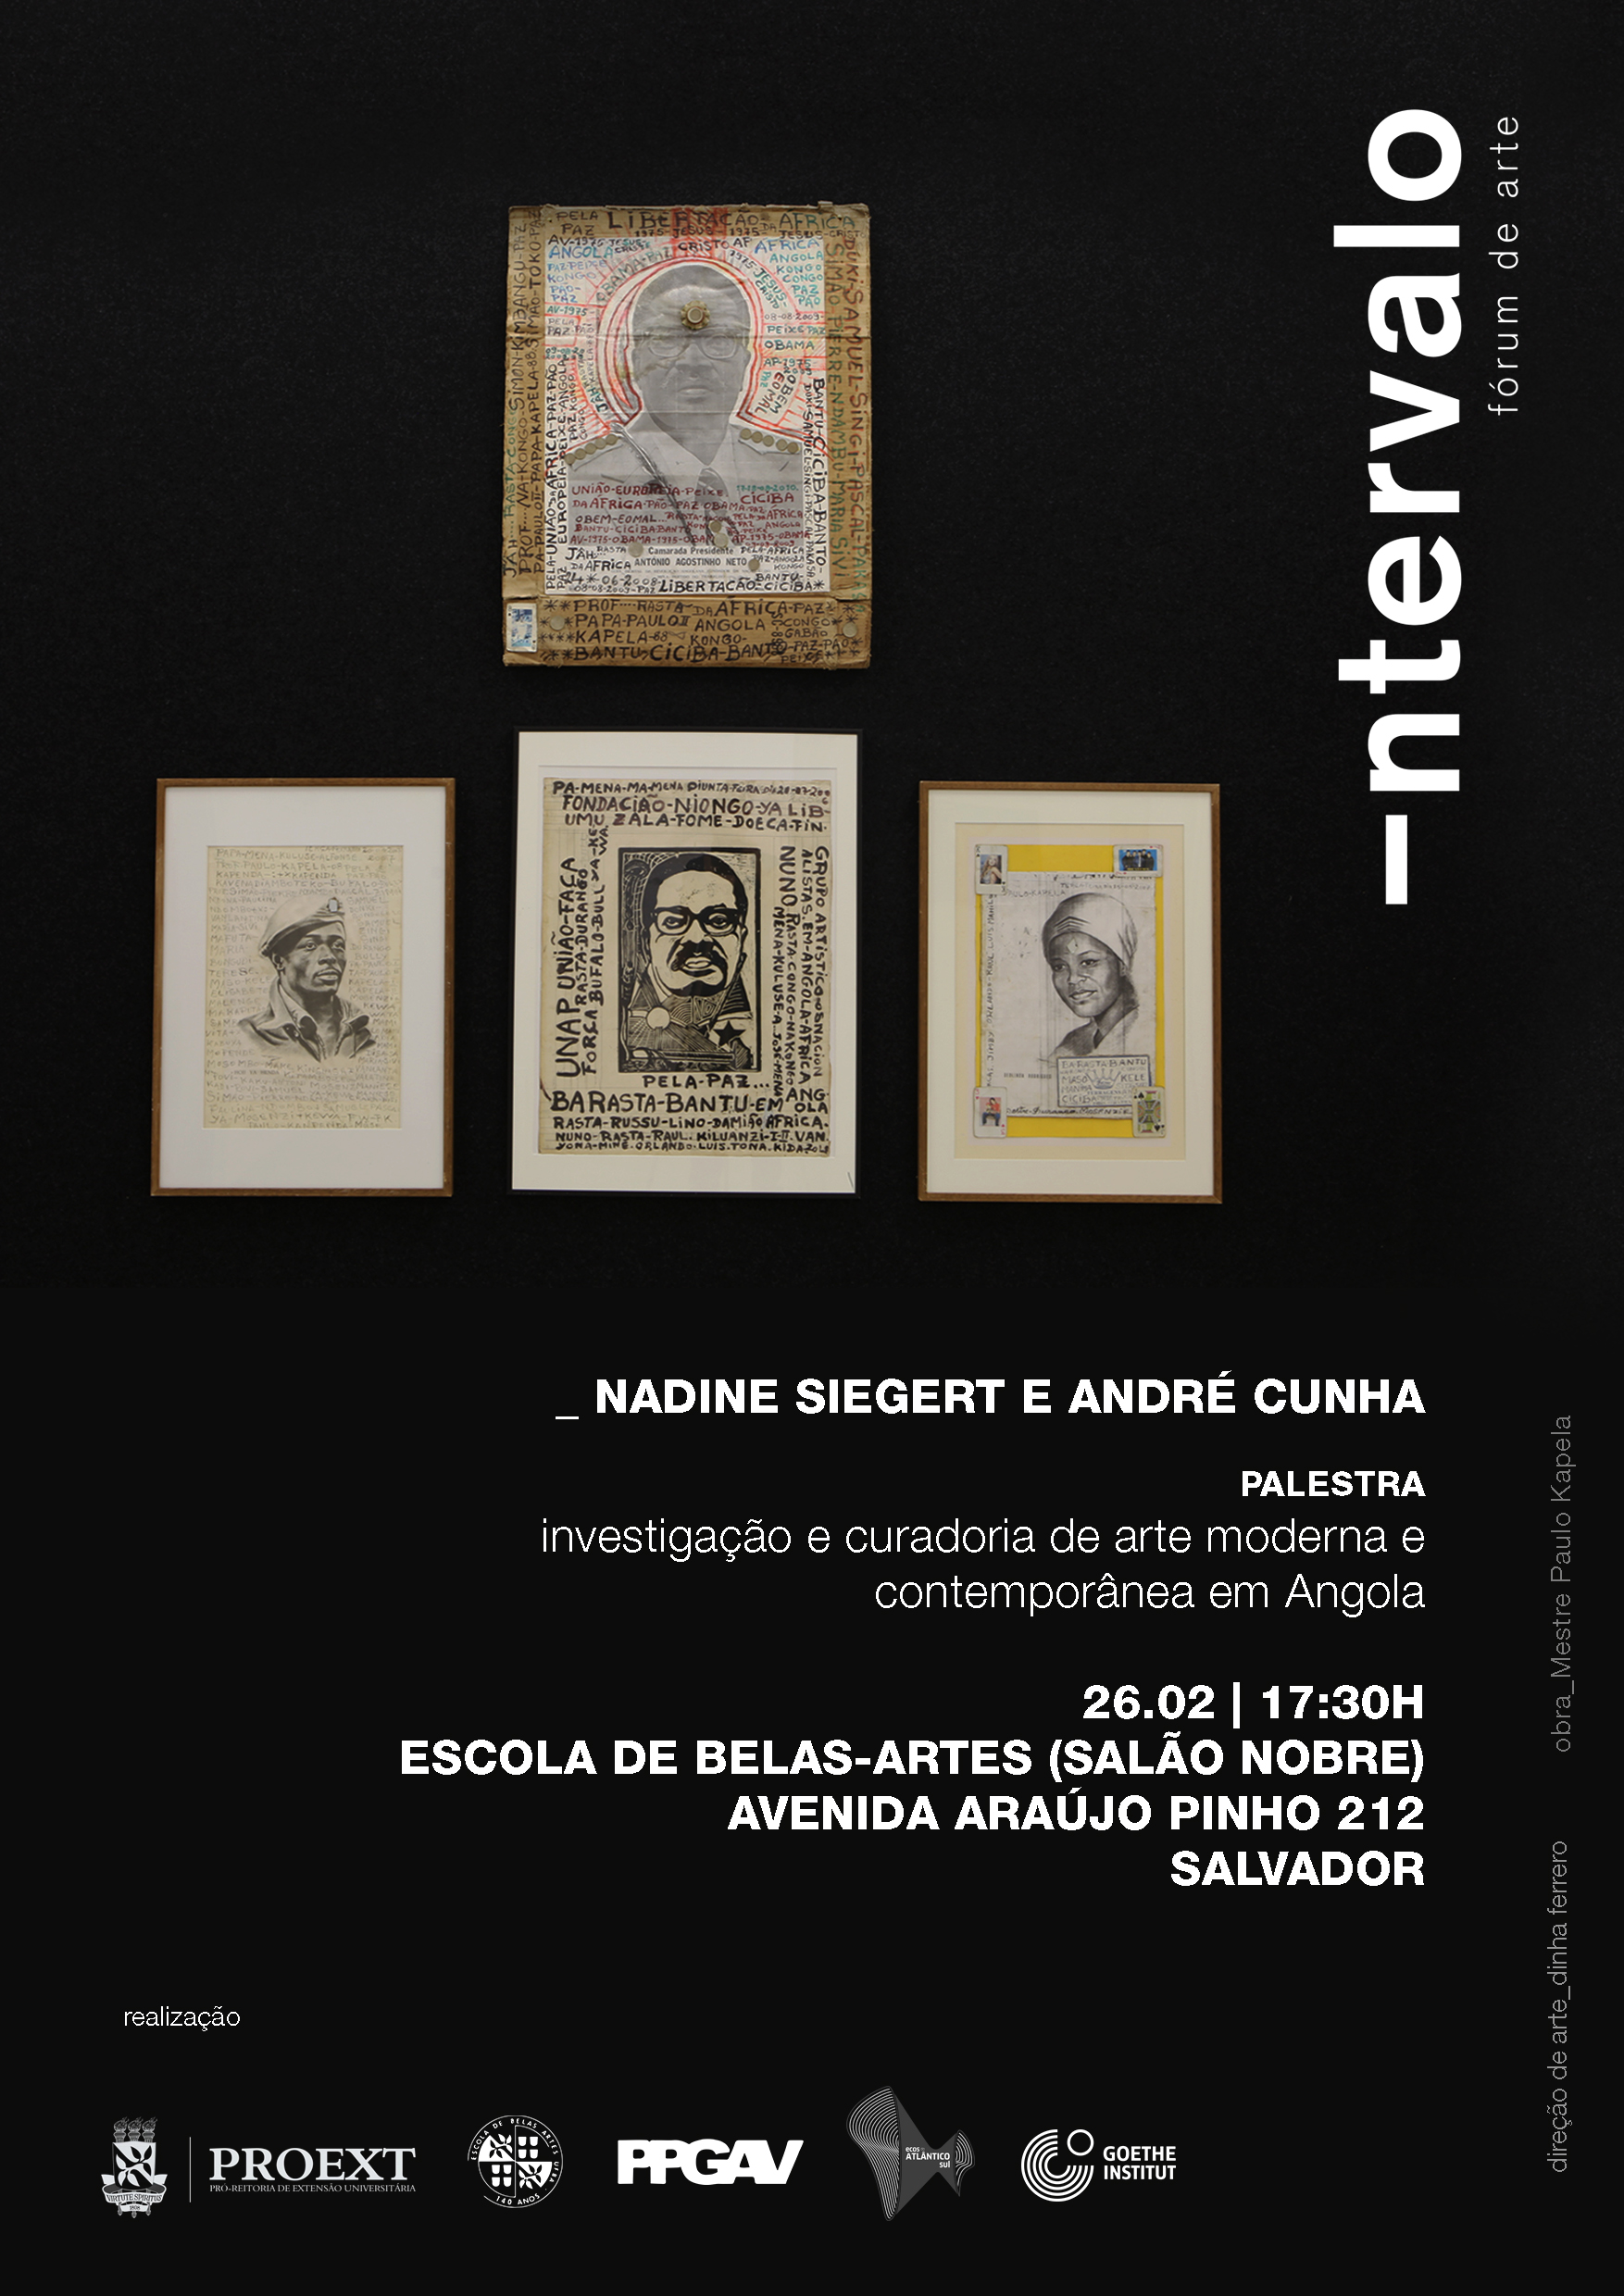 Fórum de Arte INTERVALO promove palestra sobre investigação e curadoria em Angola